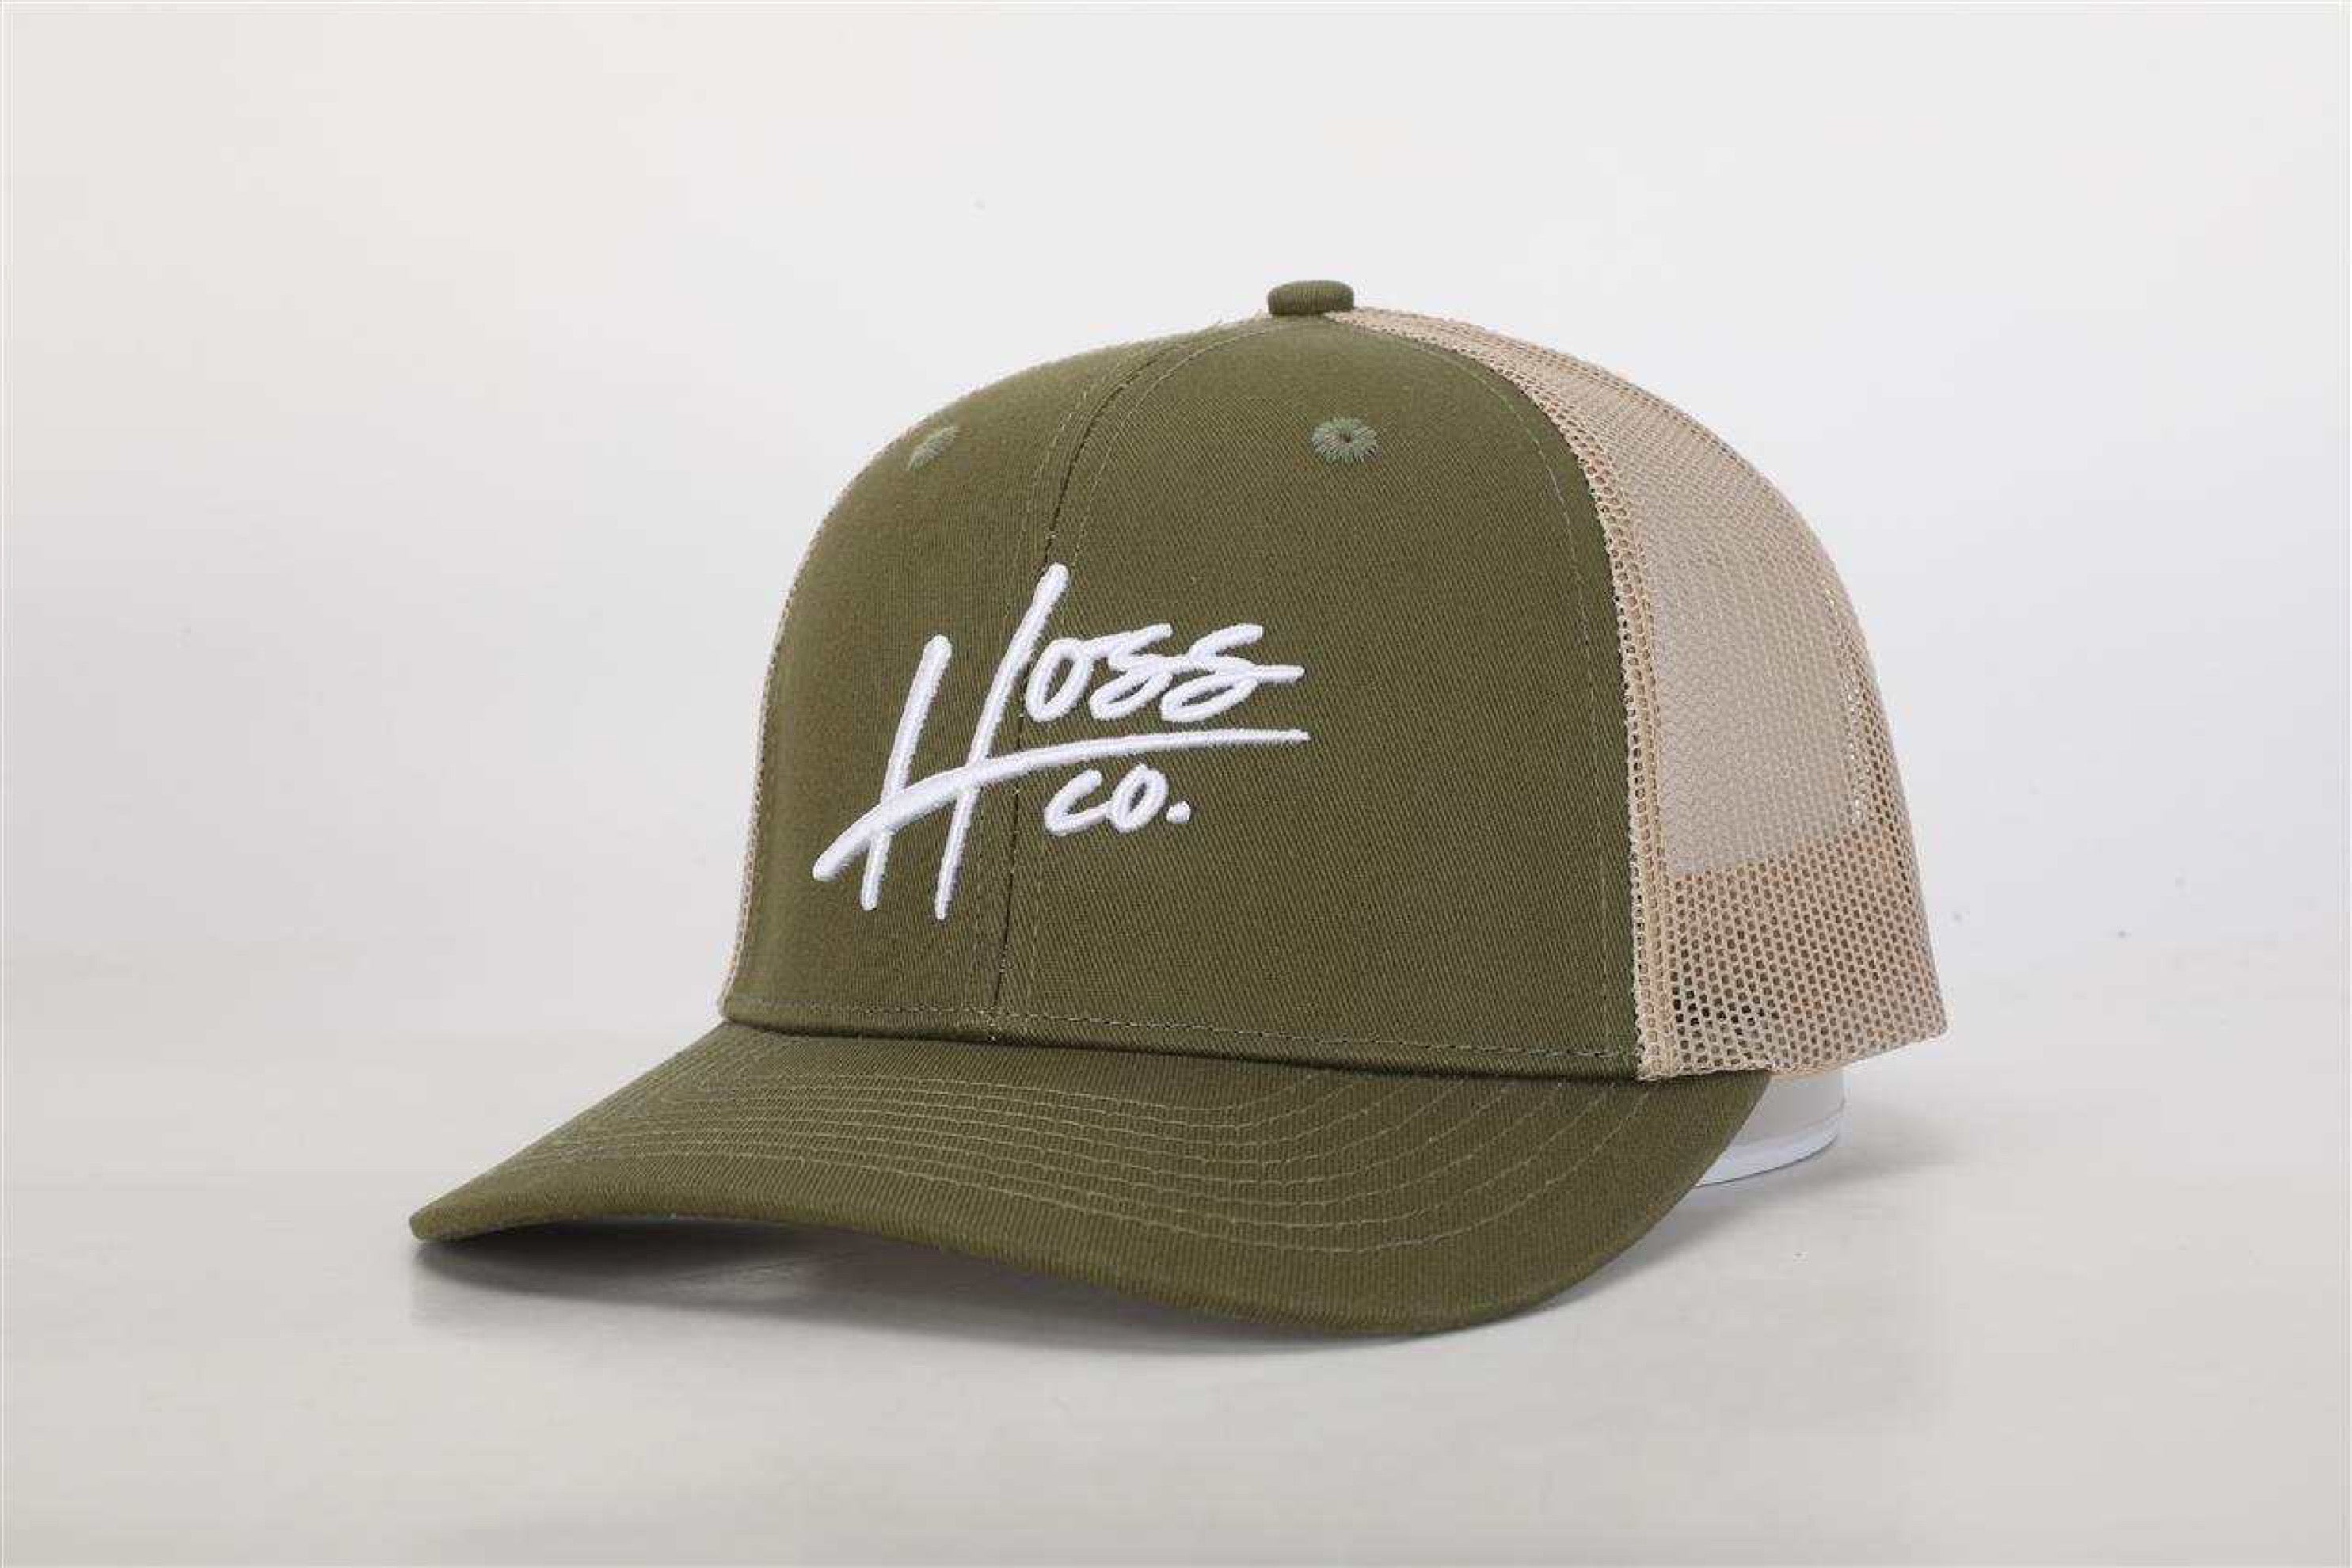 Hoss Green/Khaki Trucker Hat